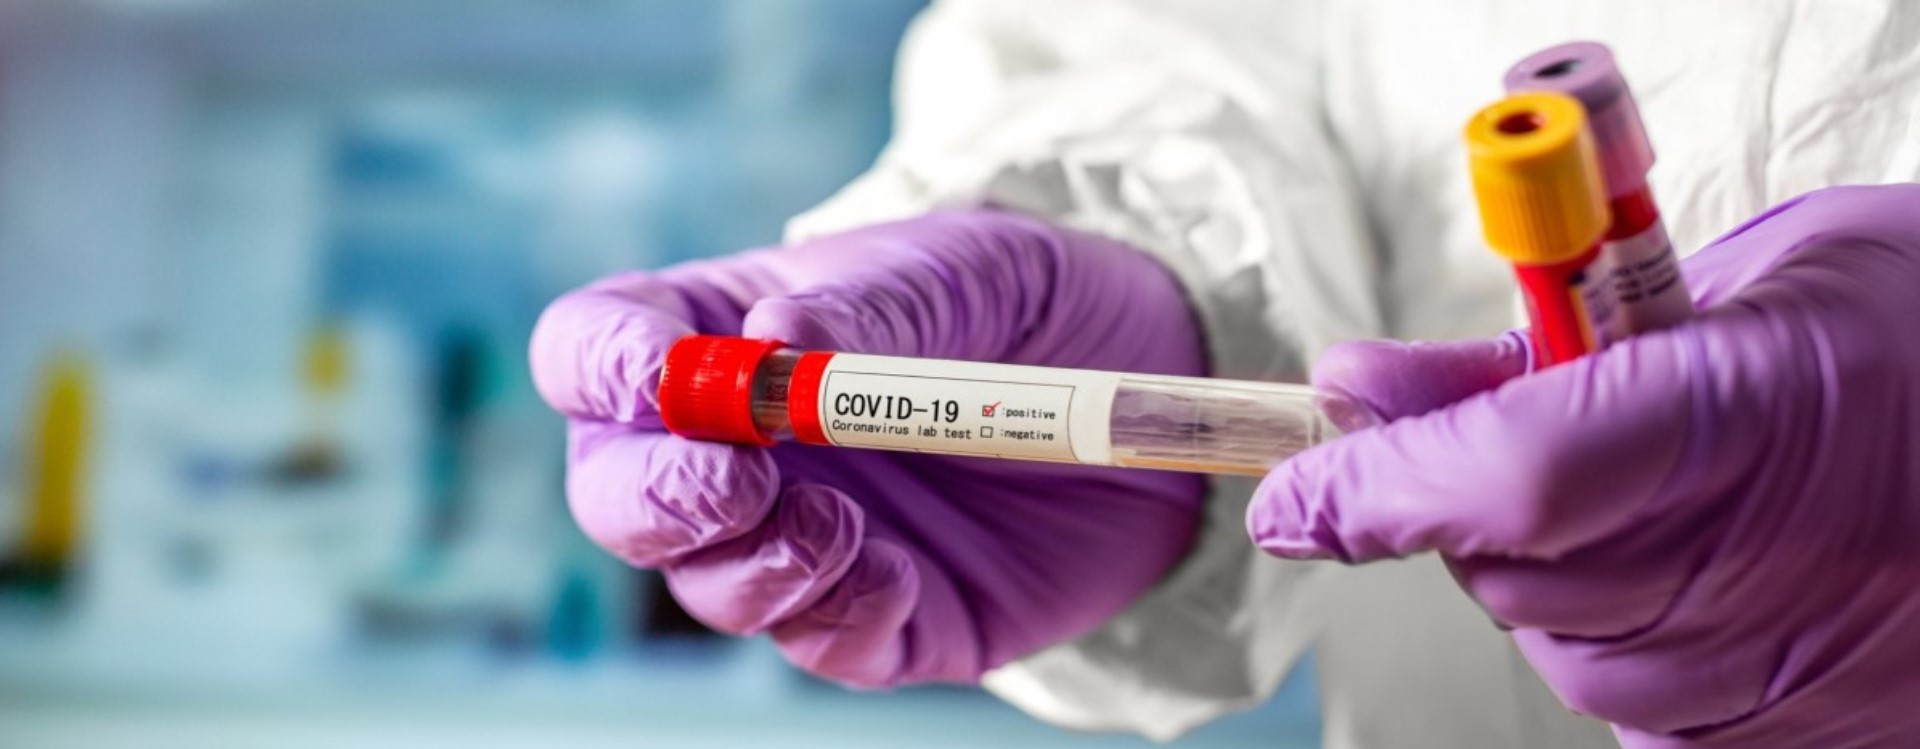 Україна має три прототипи вакцин від COVID-19 — Данілов